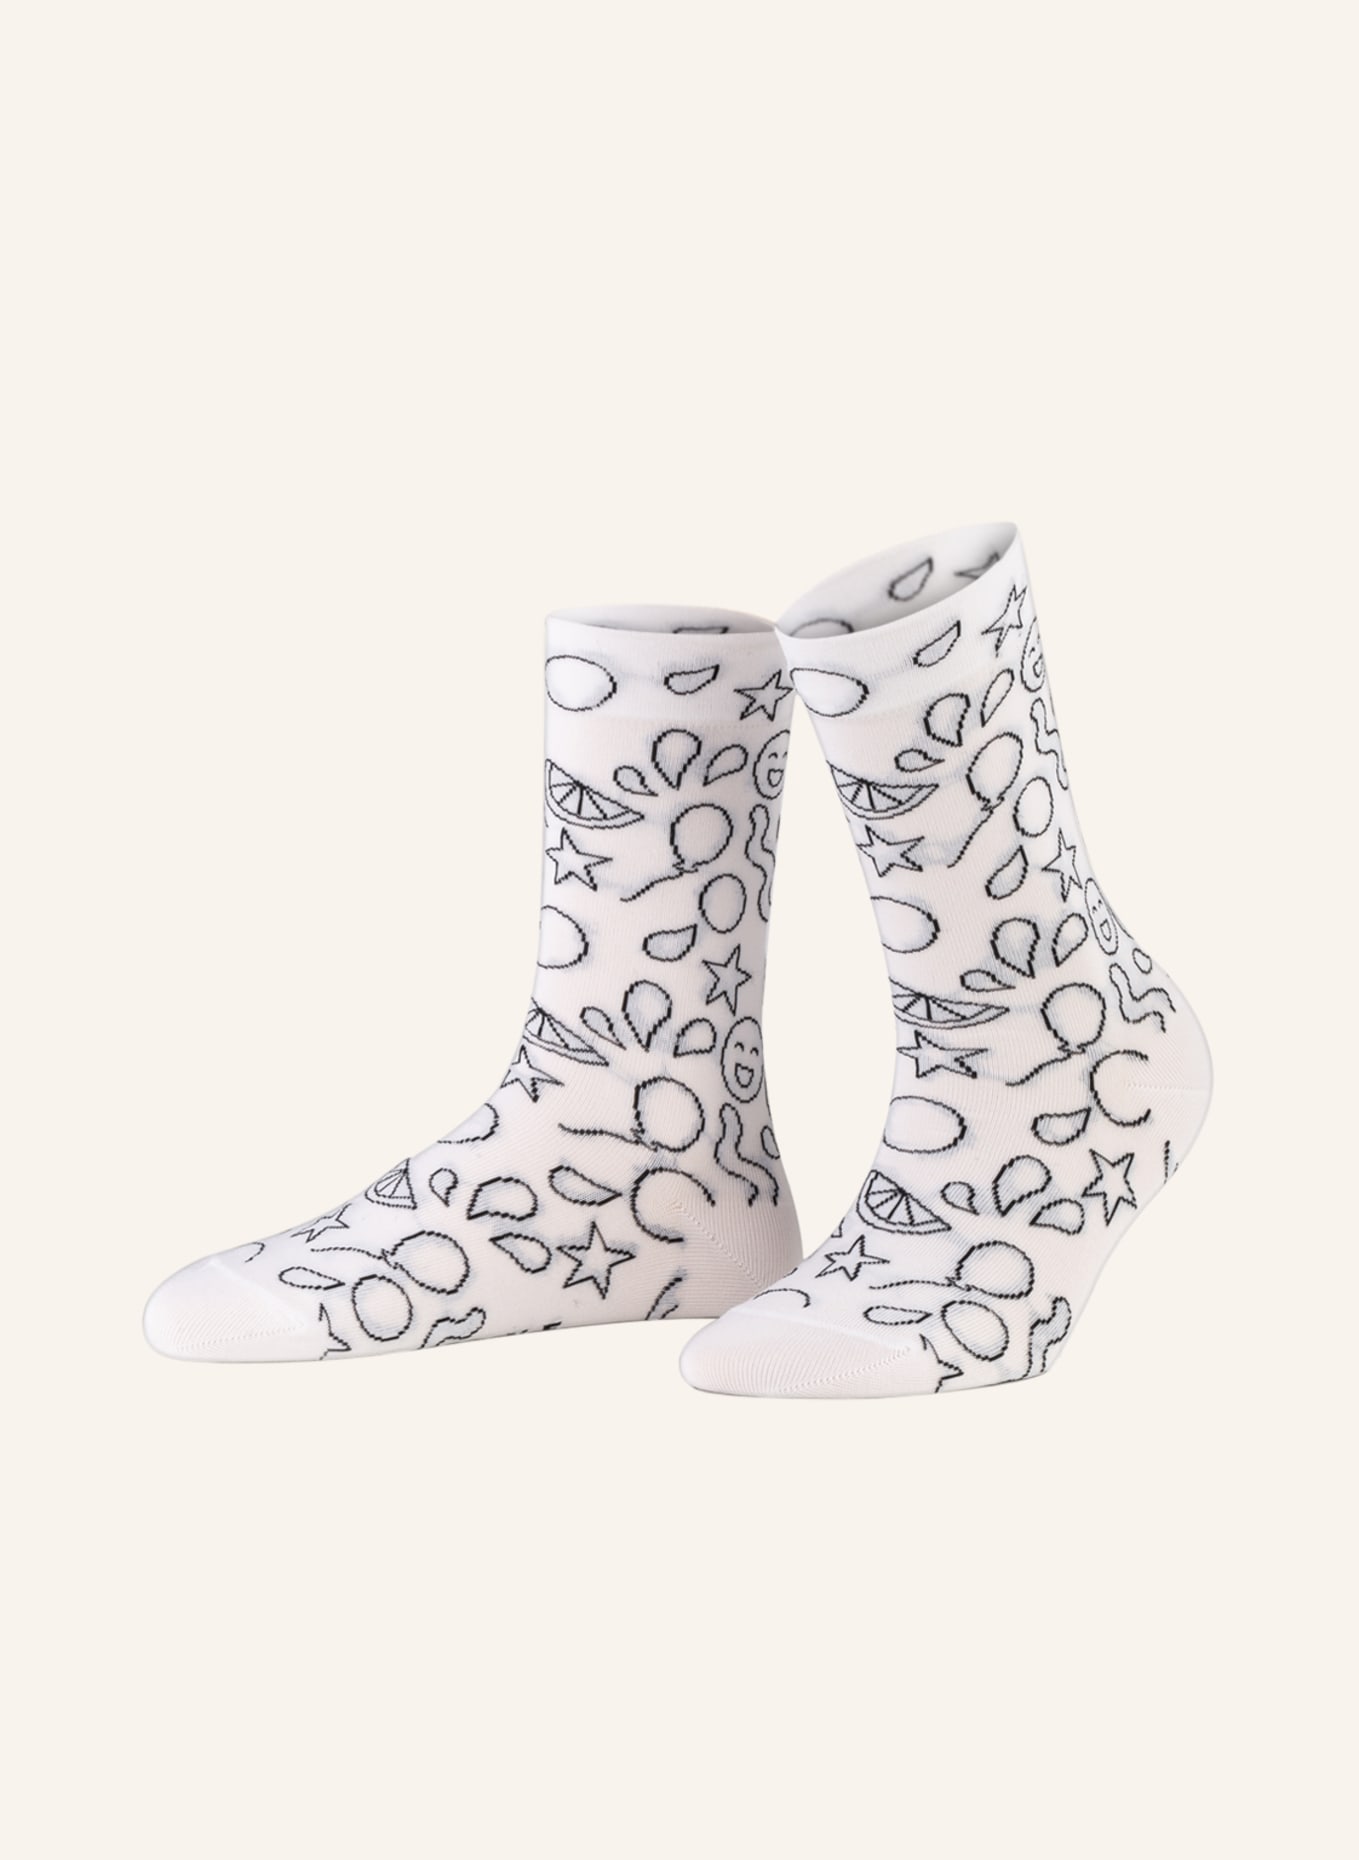 Falke Lace Socks  Mode-Klassiker entdecken